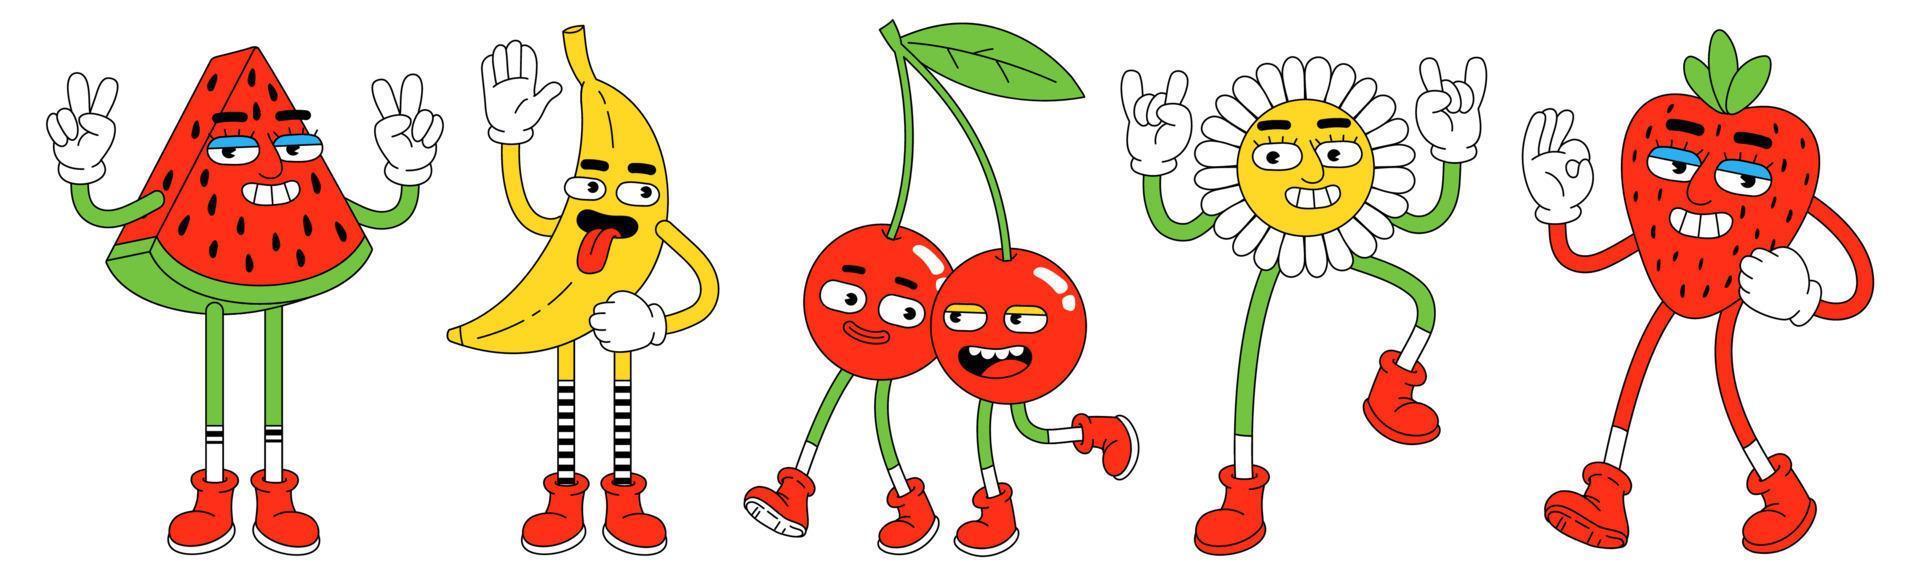 personajes divertidos en estilo de dibujos animados retro de moda. sandía, plátano, cereza, fresa y flor. vector